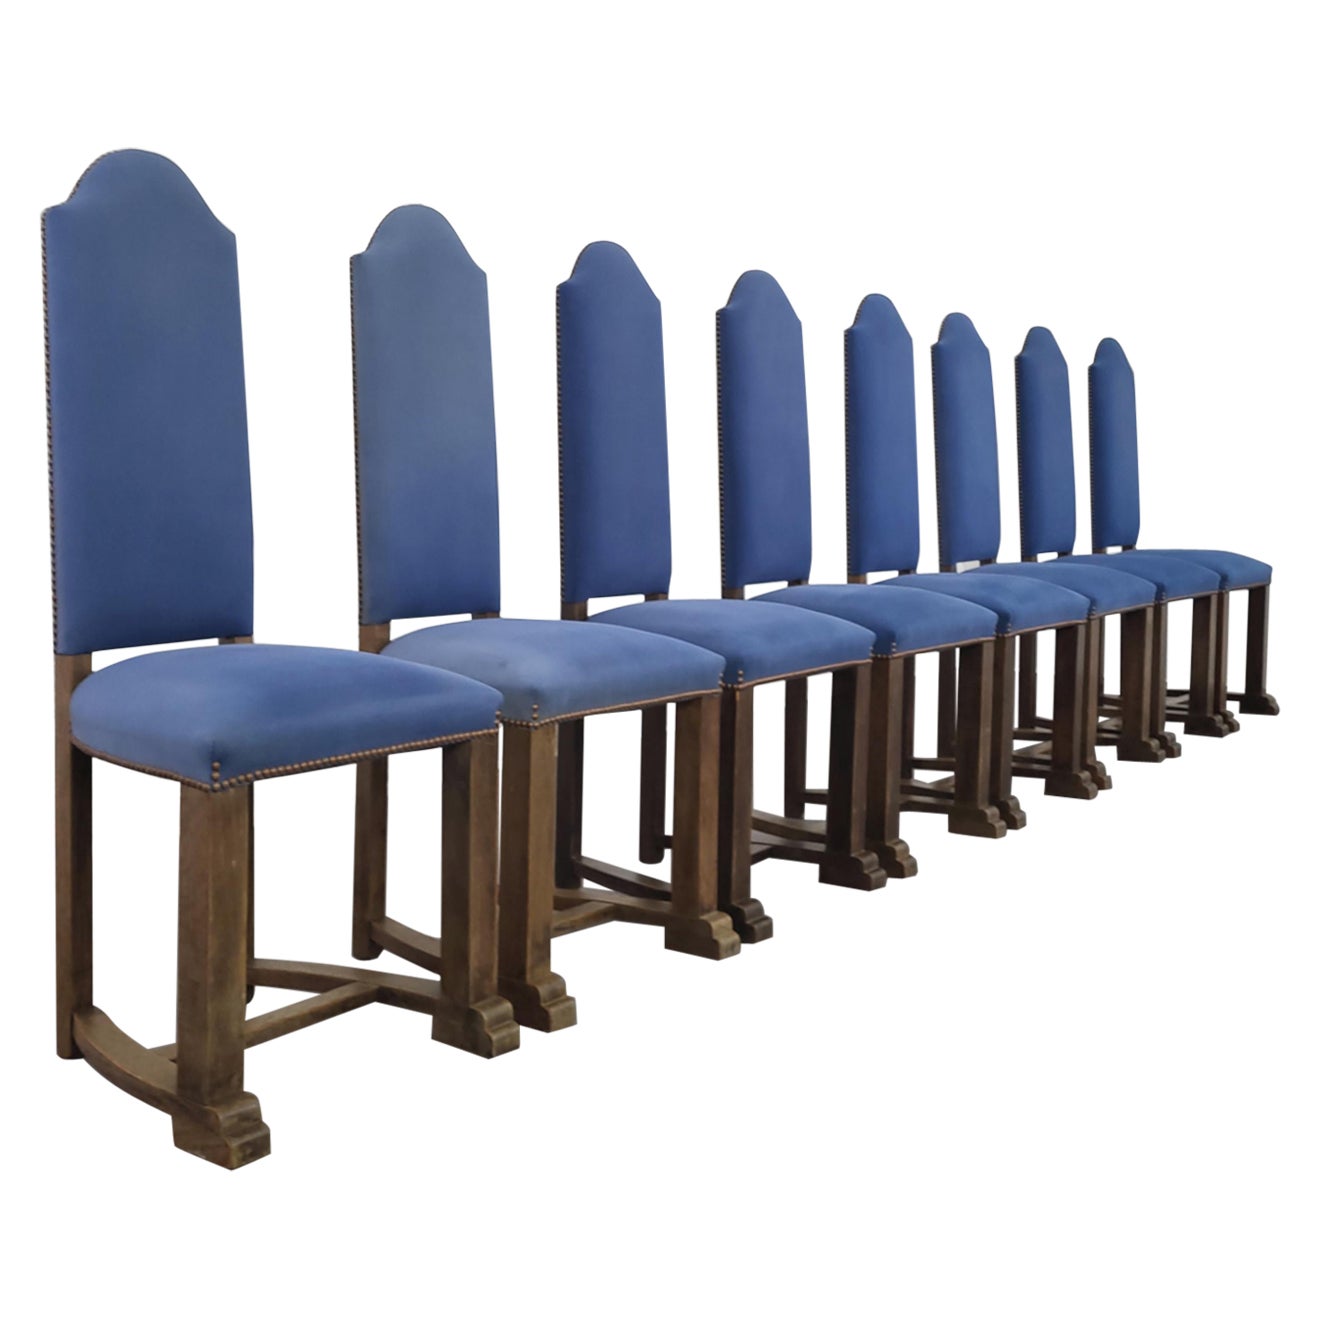 Ensemble de 8 chaises françaises anciennes de style Louis XIII en bois et tissu